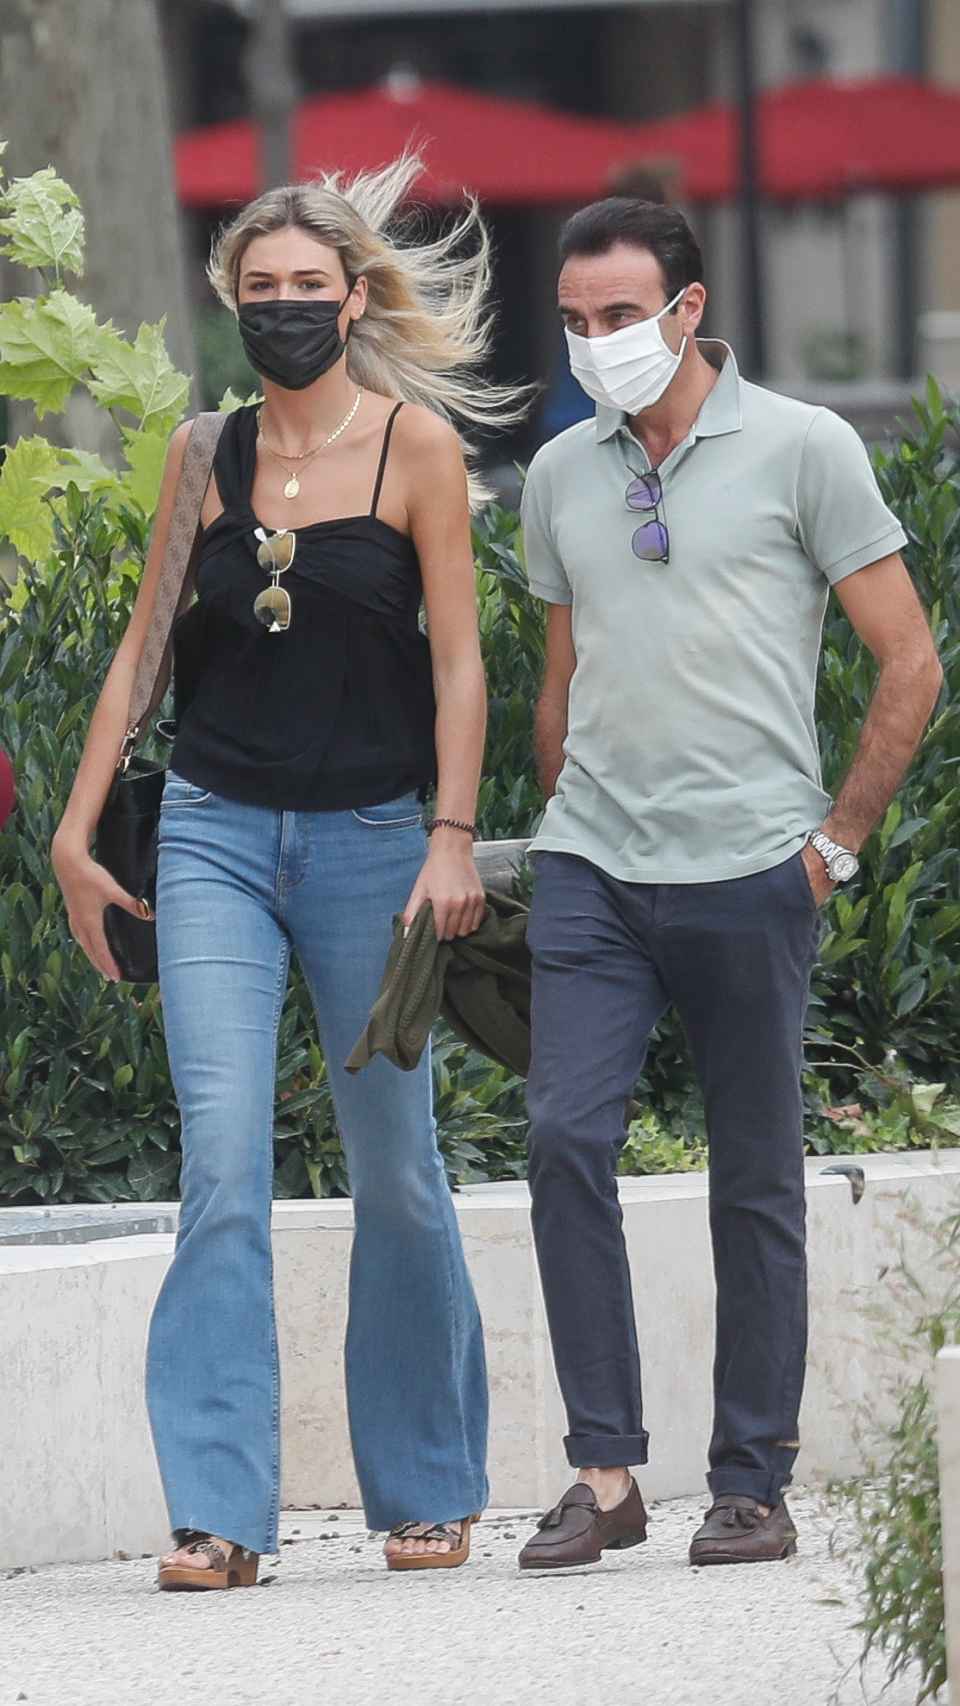 Ana Soria y Enrique Ponce en una fotografía tomada en Nimes, Francia, en septiembre de 2020.